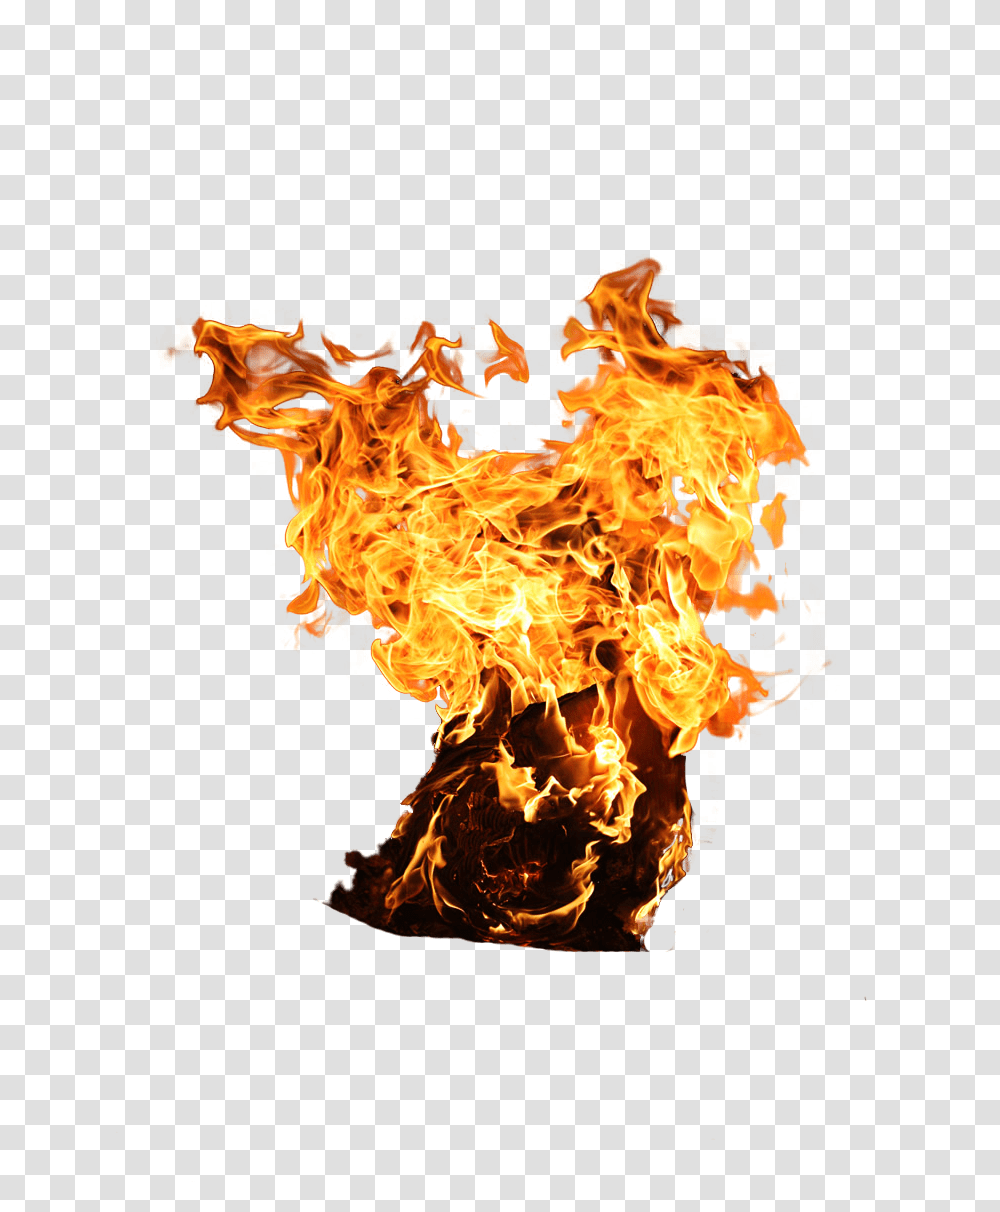 Explosion, Weapon, Fire, Flame, Bonfire Transparent Png